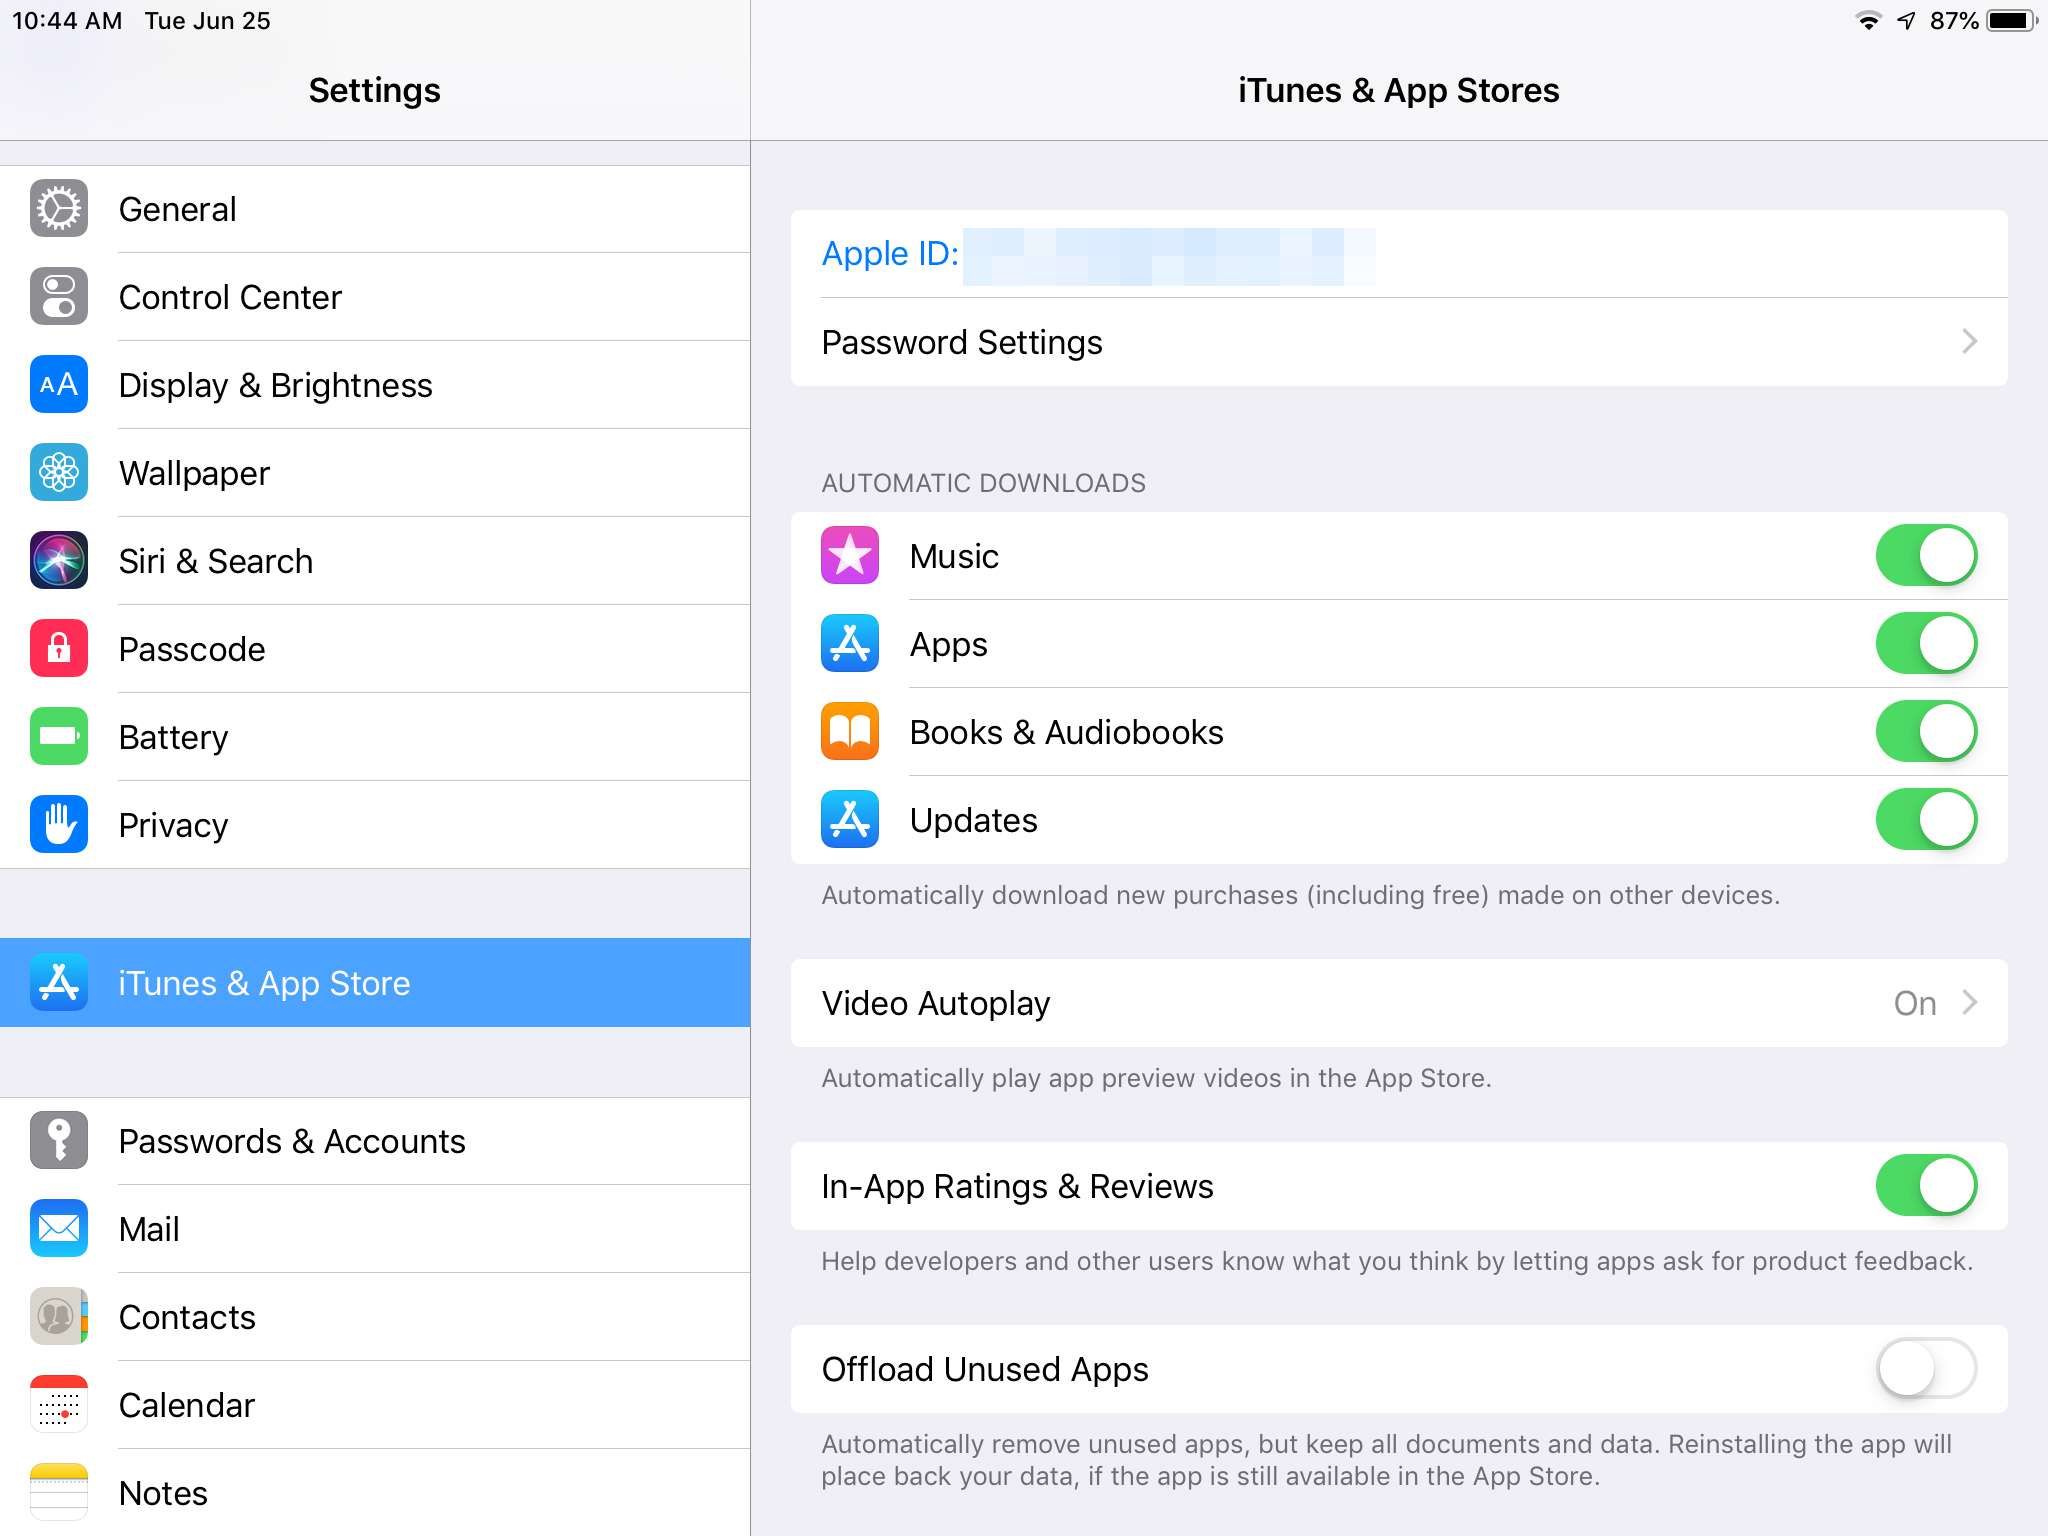 снимок экрана - параметры автоматической загрузки в настройках iTunes & App Store